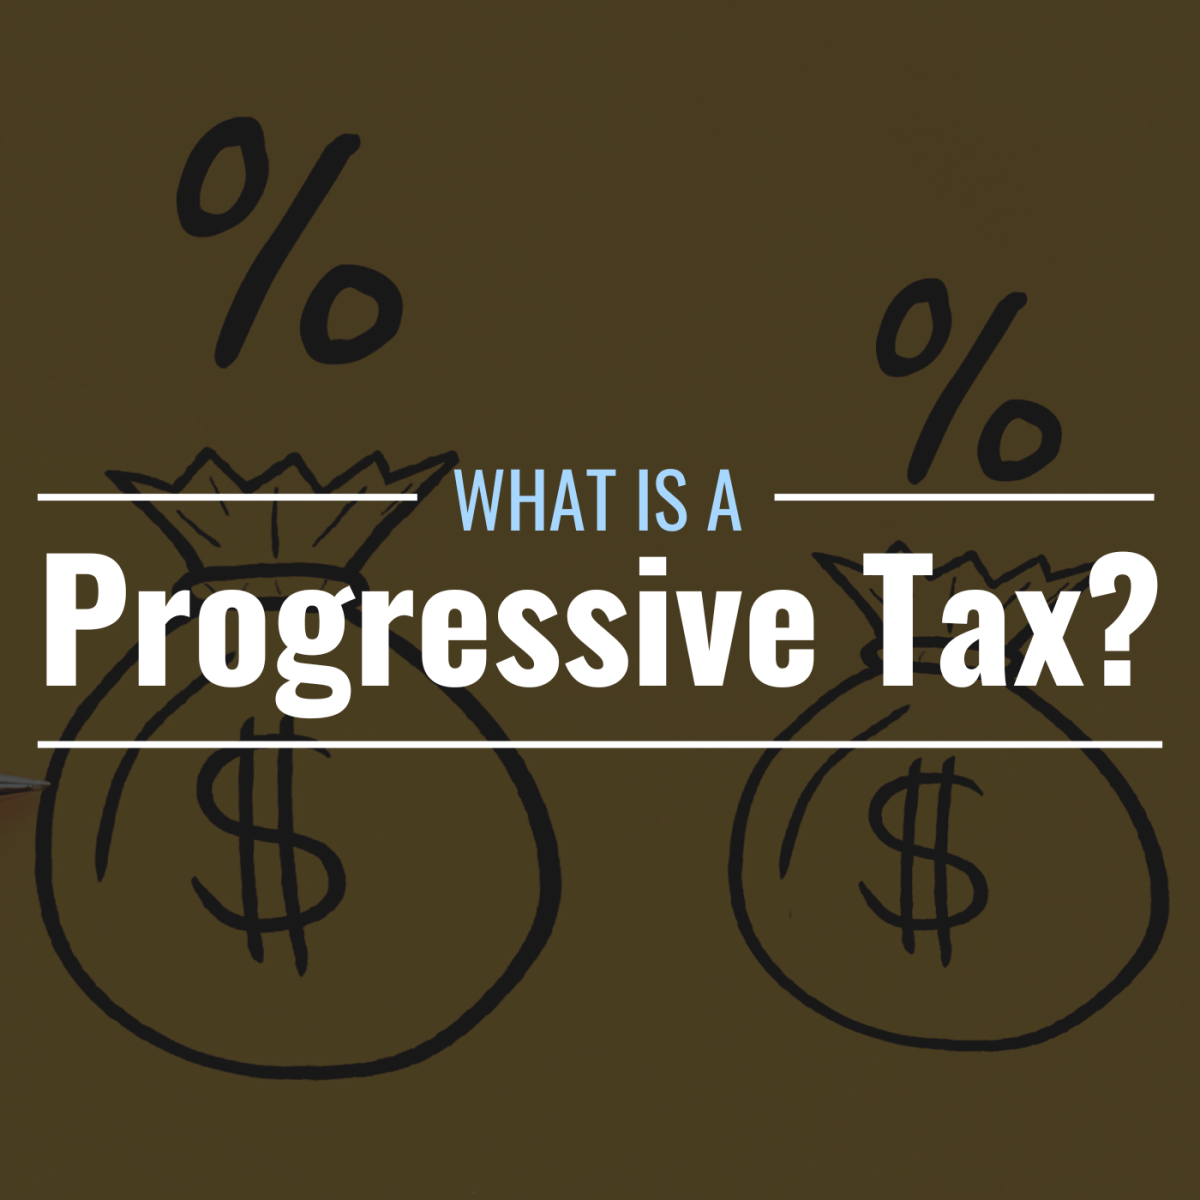 essay on progressive tax